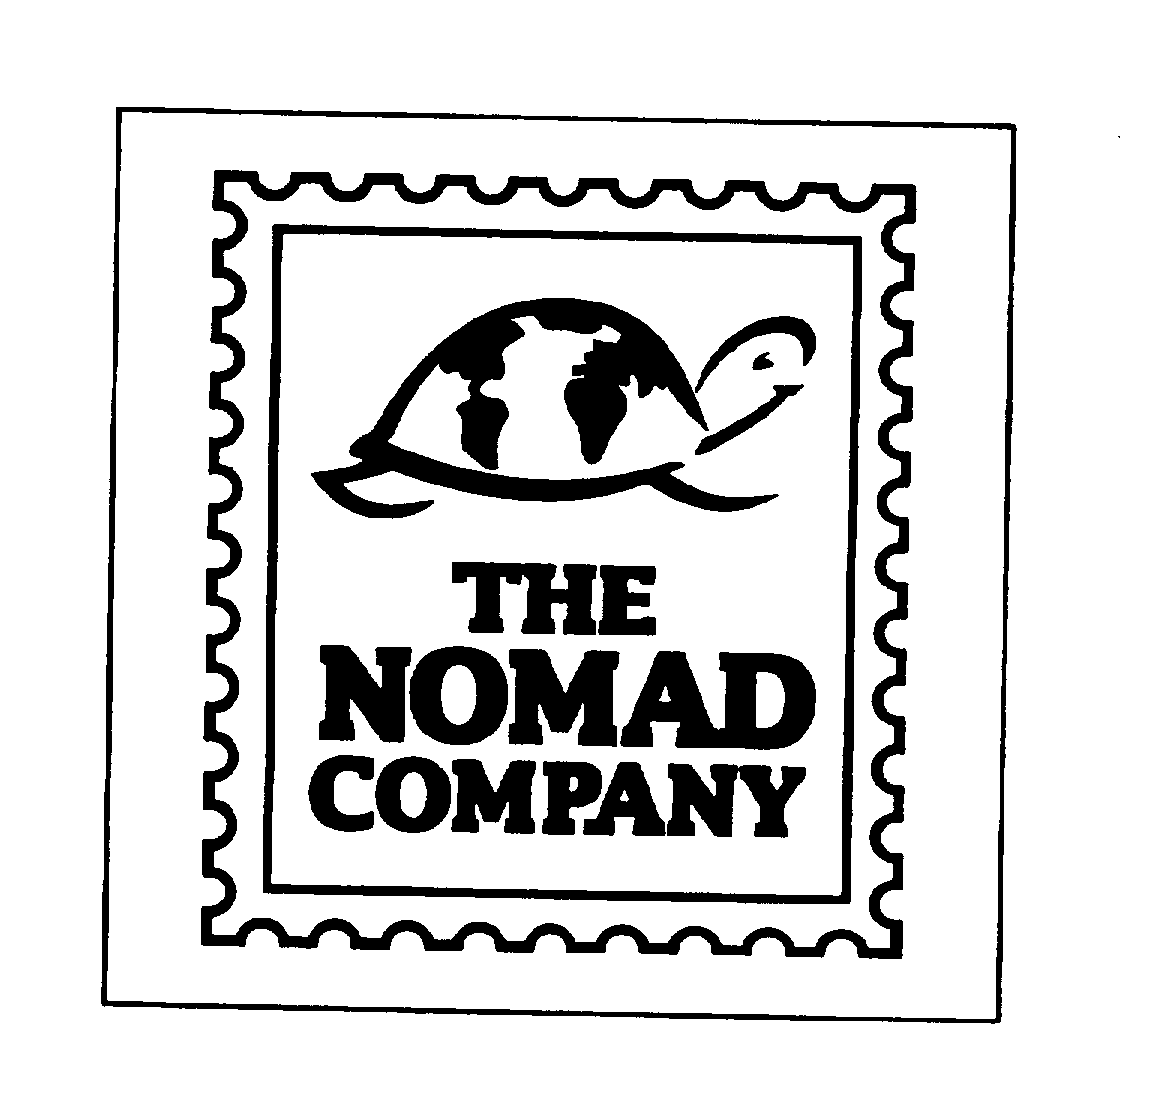  THE NOMAD COMPANY